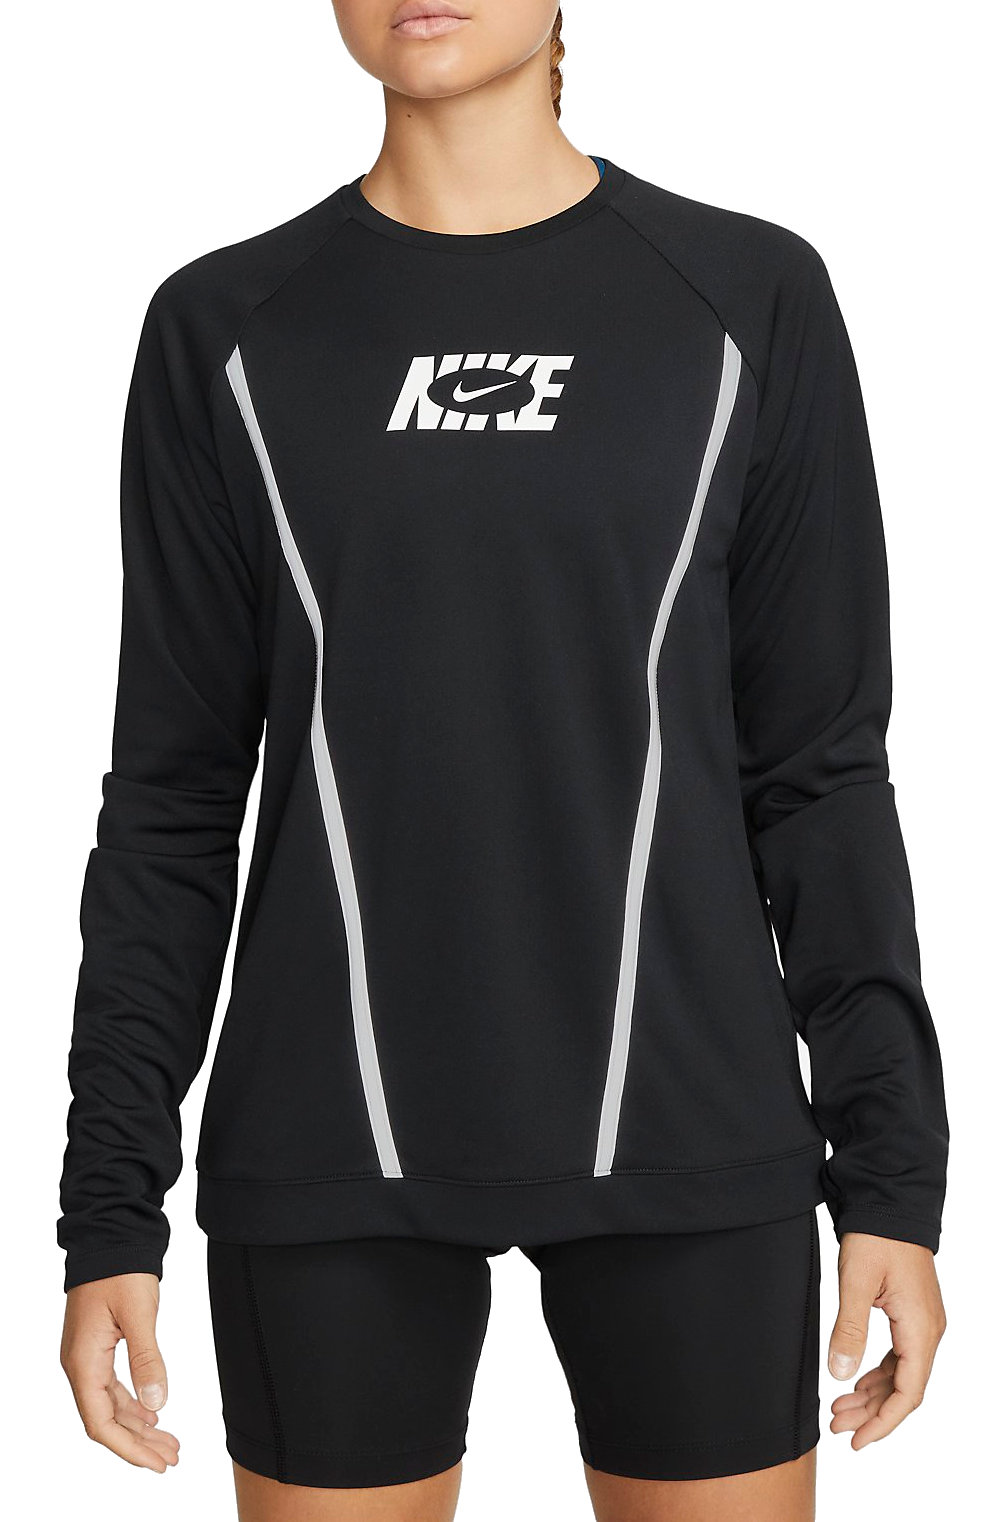 Μακρυμάνικη μπλούζα Nike Dri-FIT Icon Clash Women s Long Sleeve Pacer Top